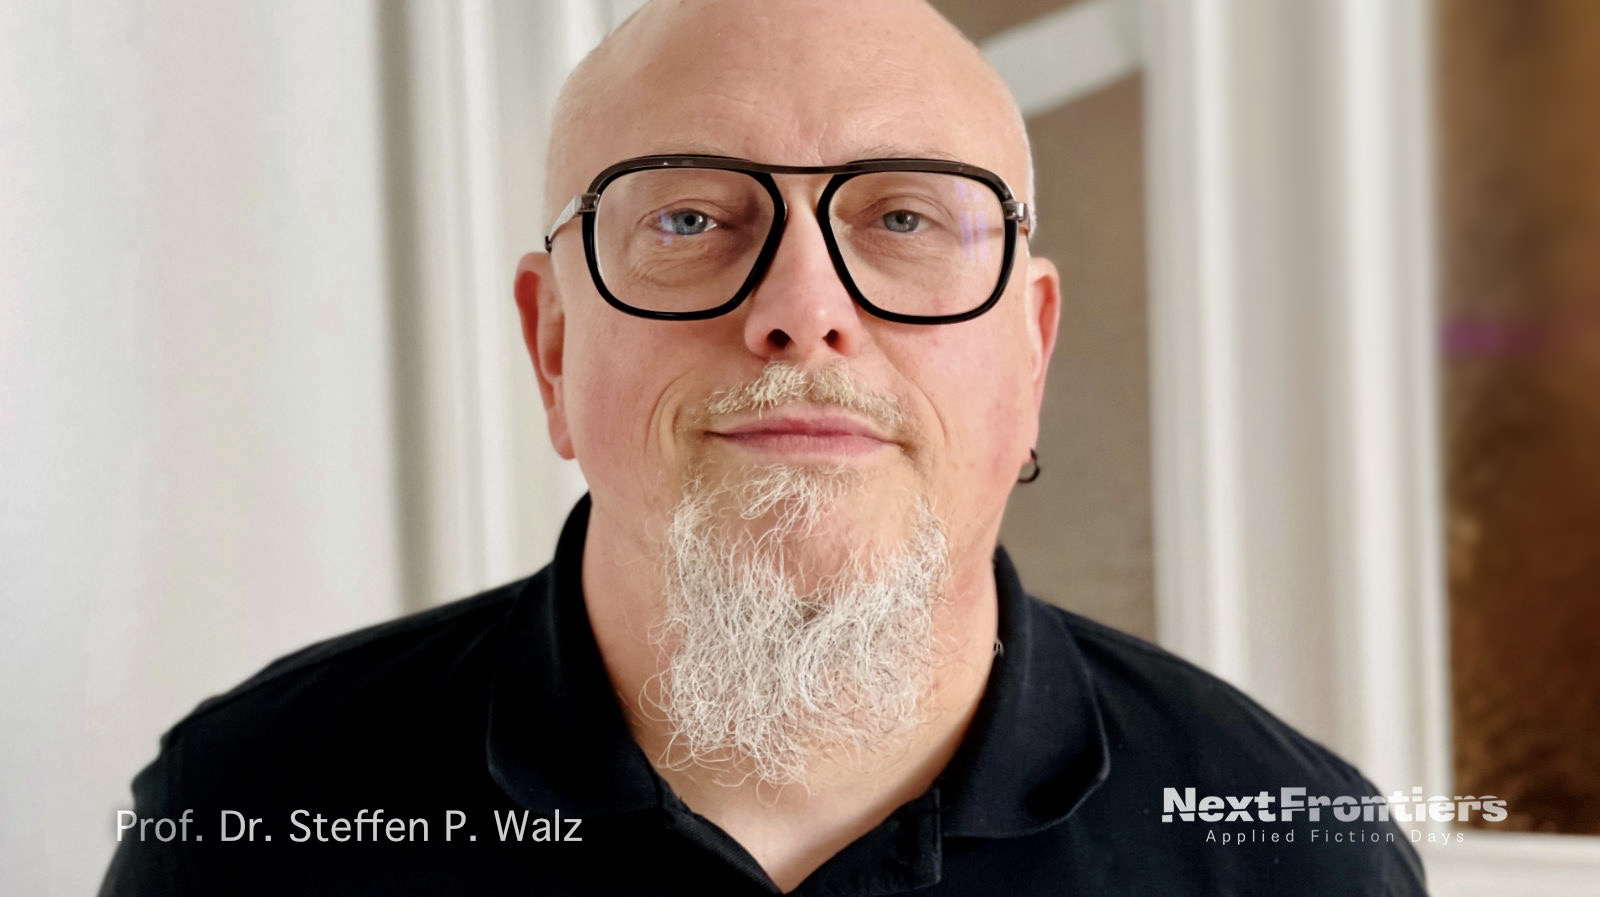 Prof. Dr. Steffen P. Walz